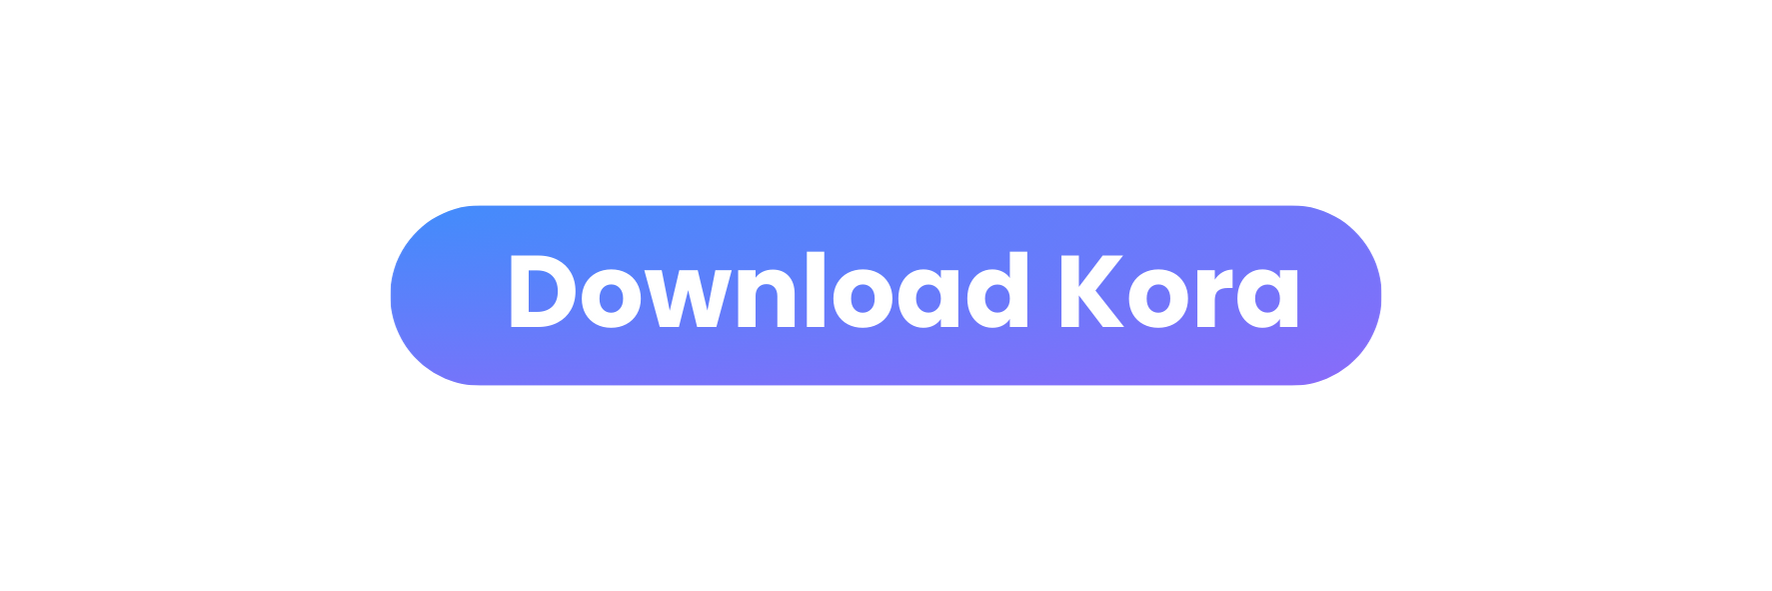 Download Kora